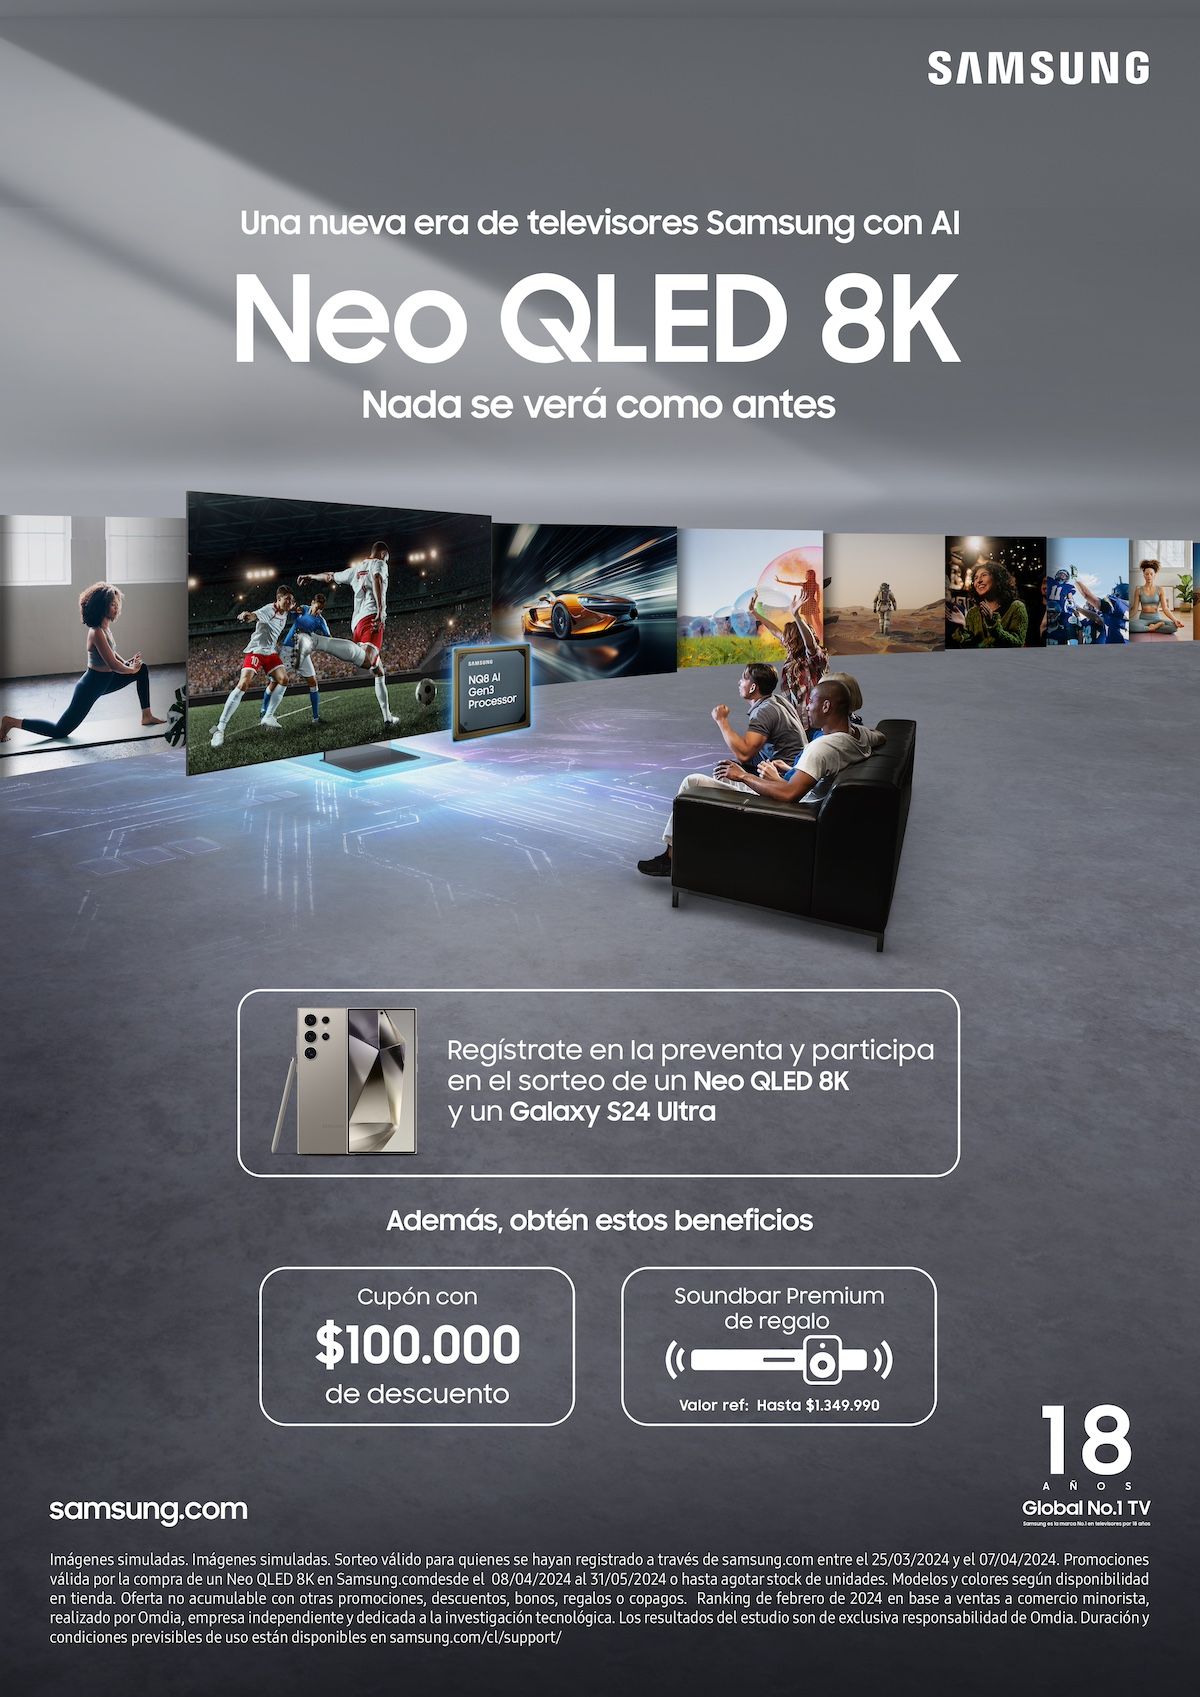 Neo QLED 8K